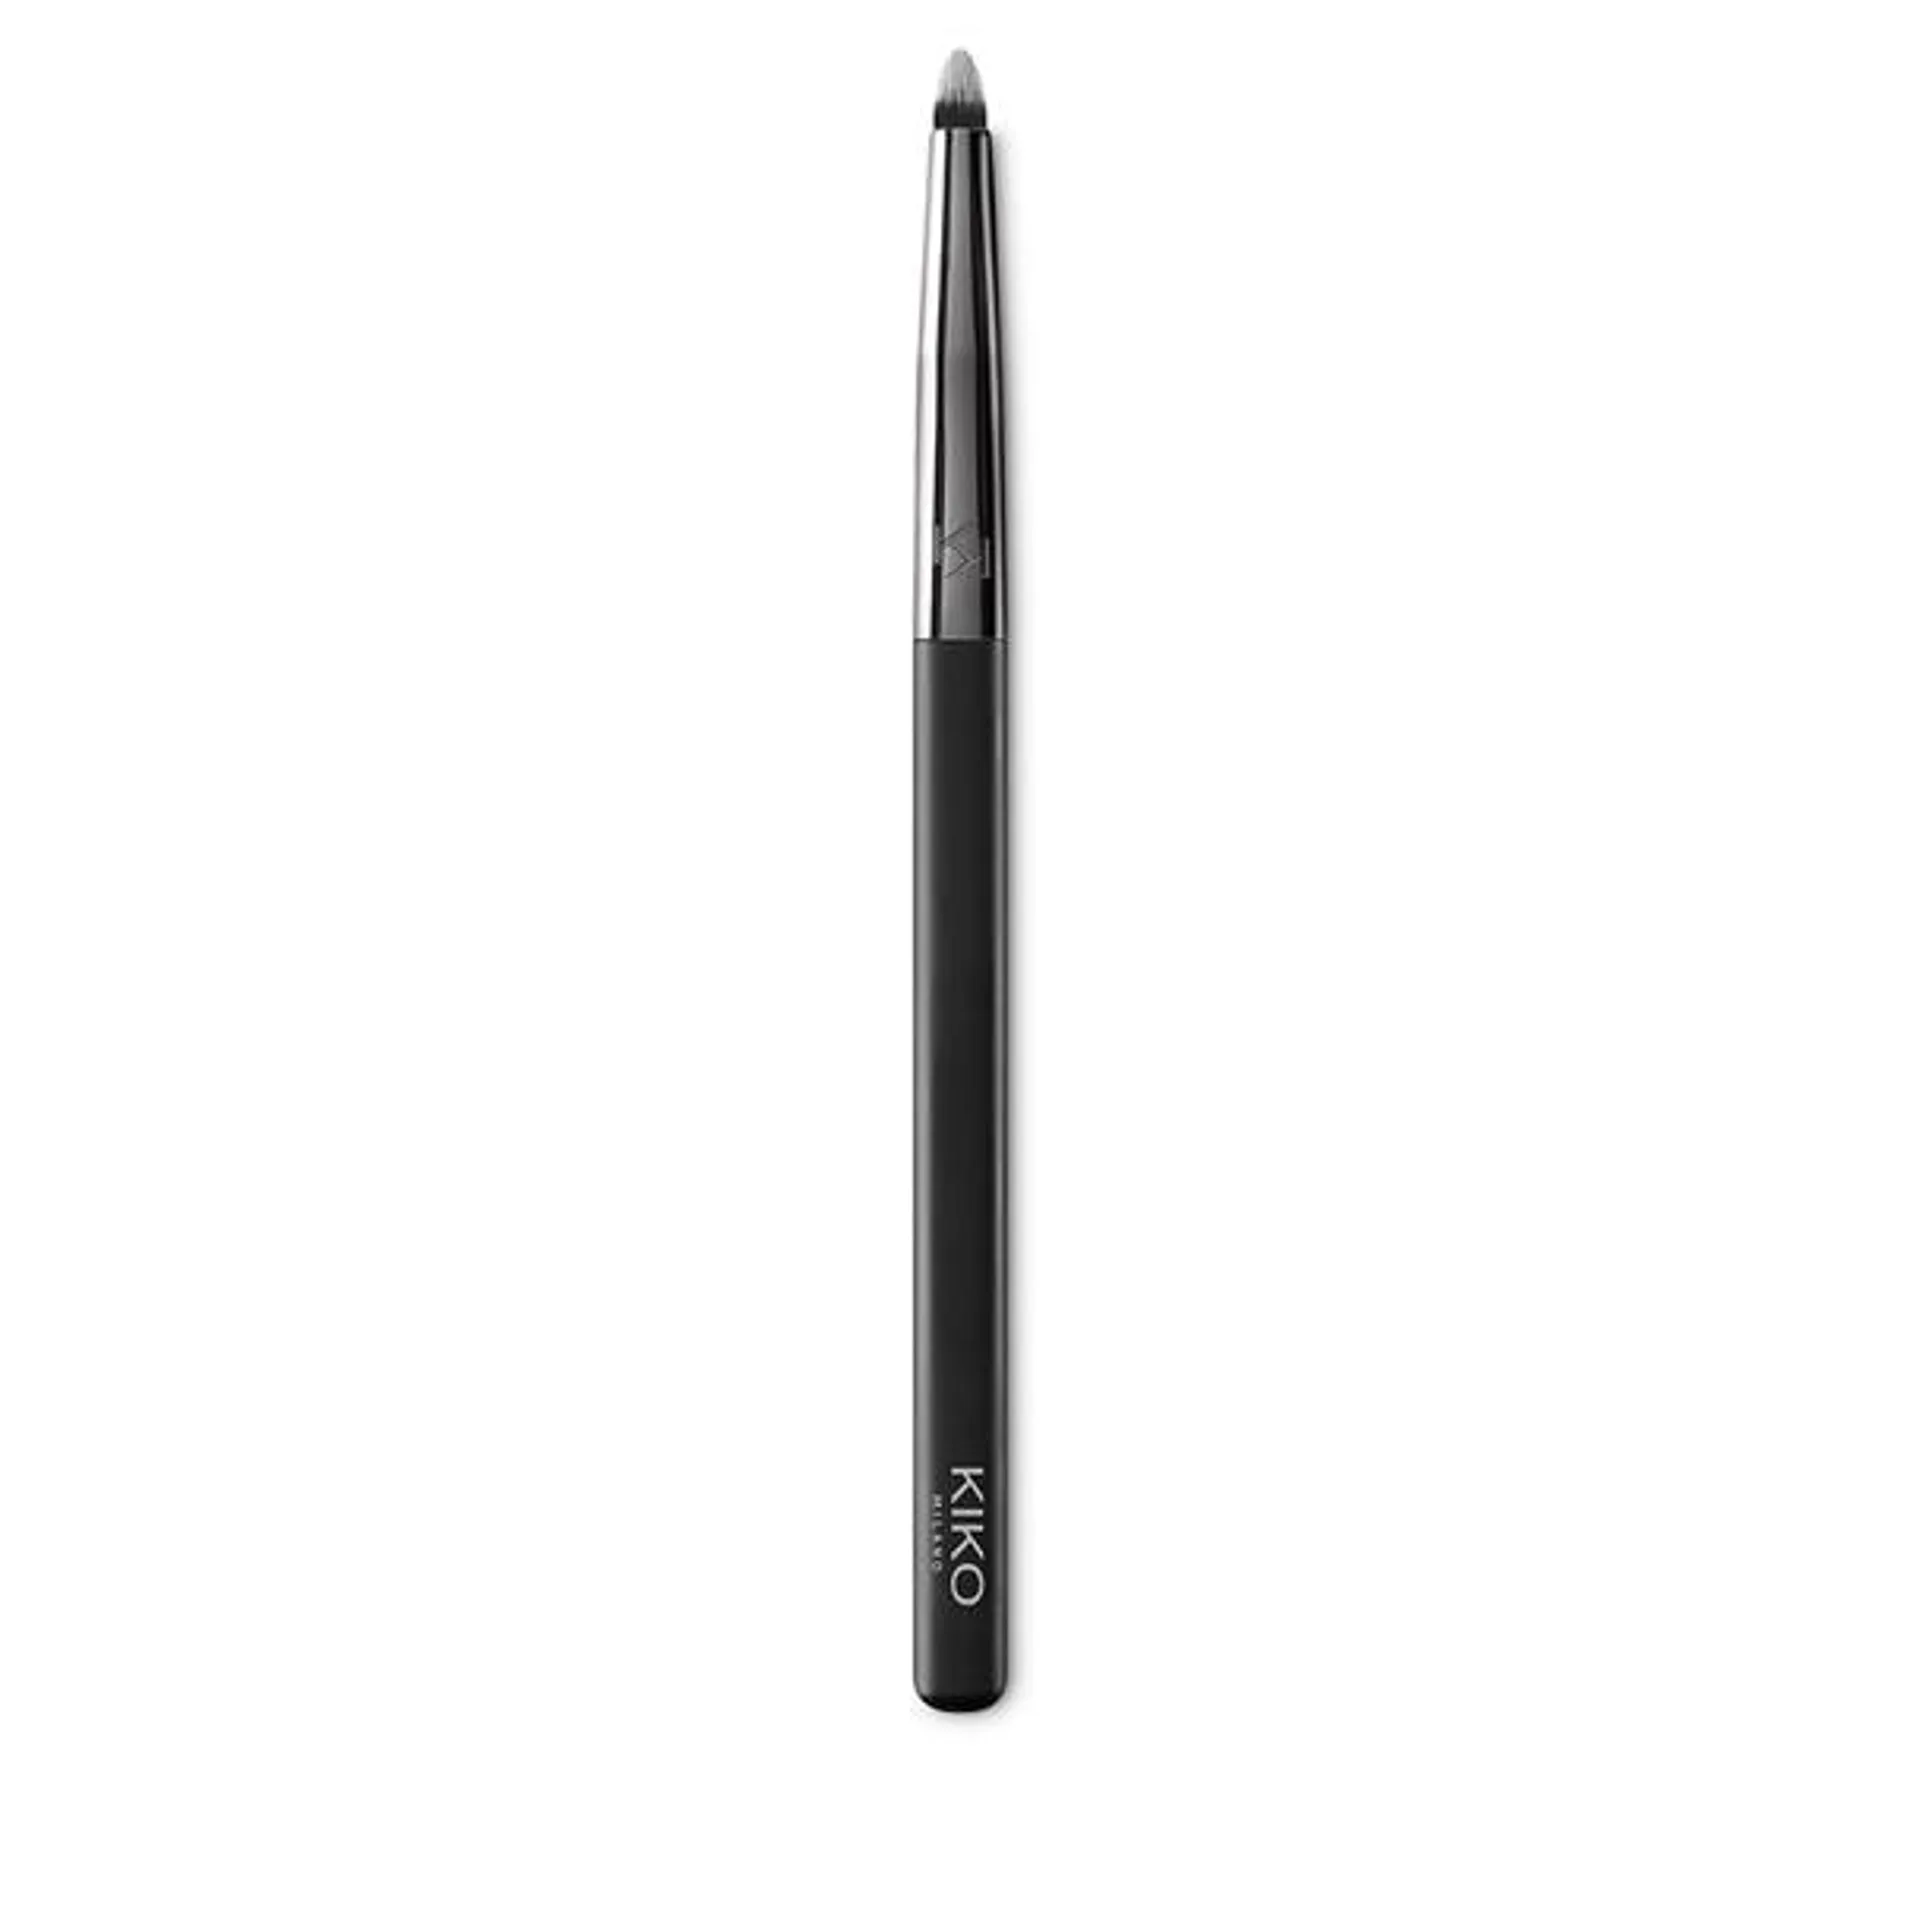 Pennello con punta a penna per ombretti e matite, fibre sintetiche